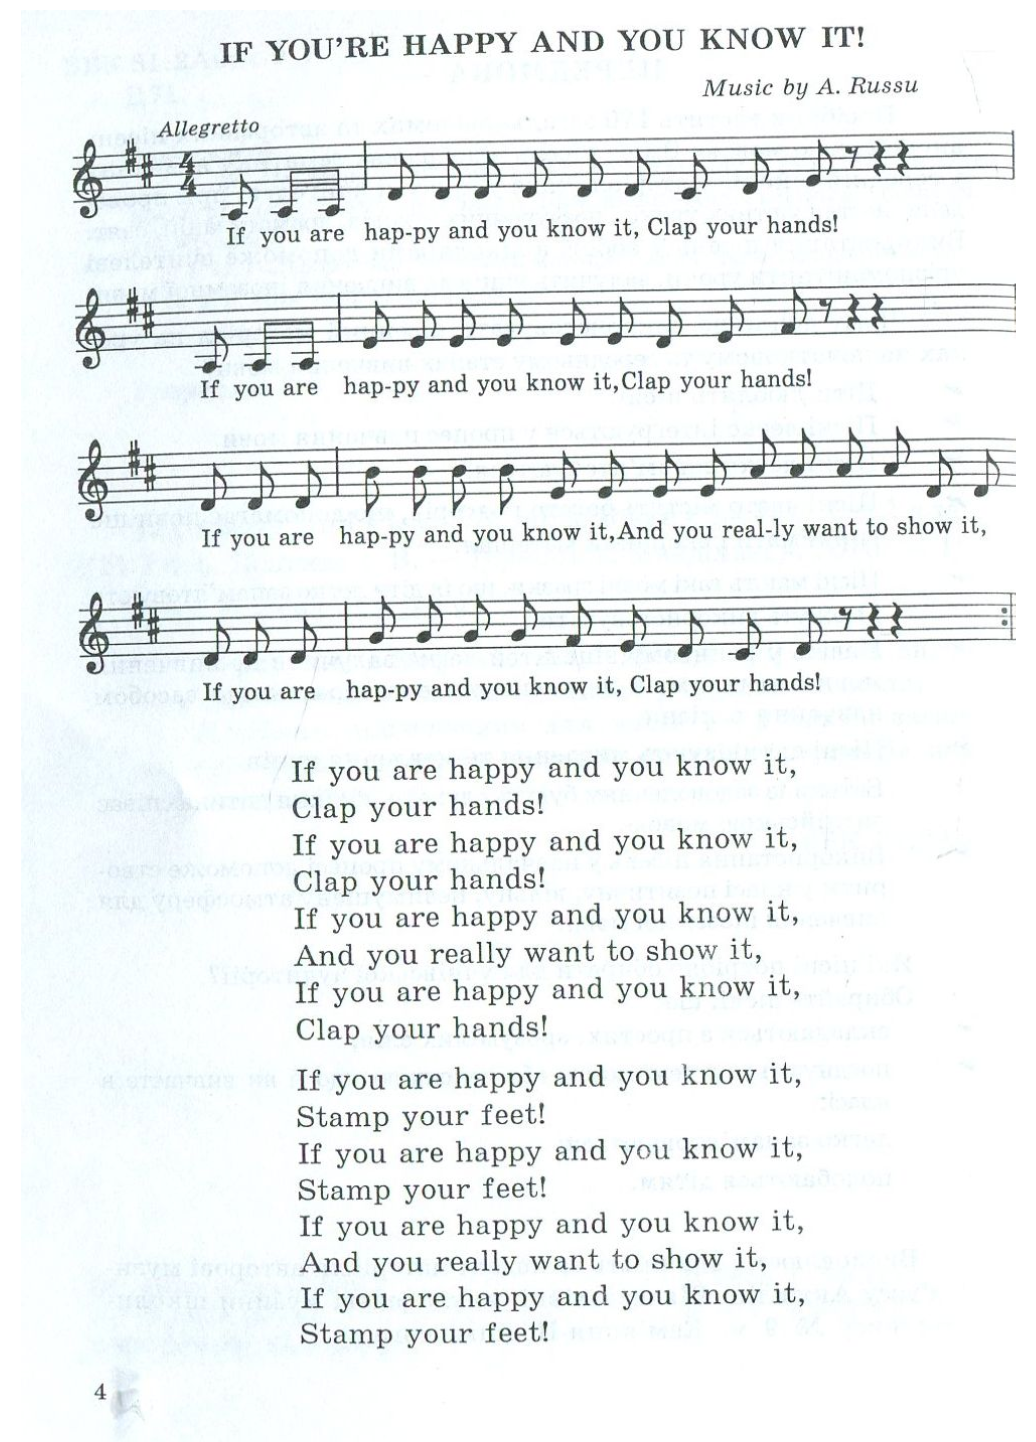 Let’s Sing And Play: 170 англійських пісень. 1-11 класи. 978-966-634-283-9 - фото 2